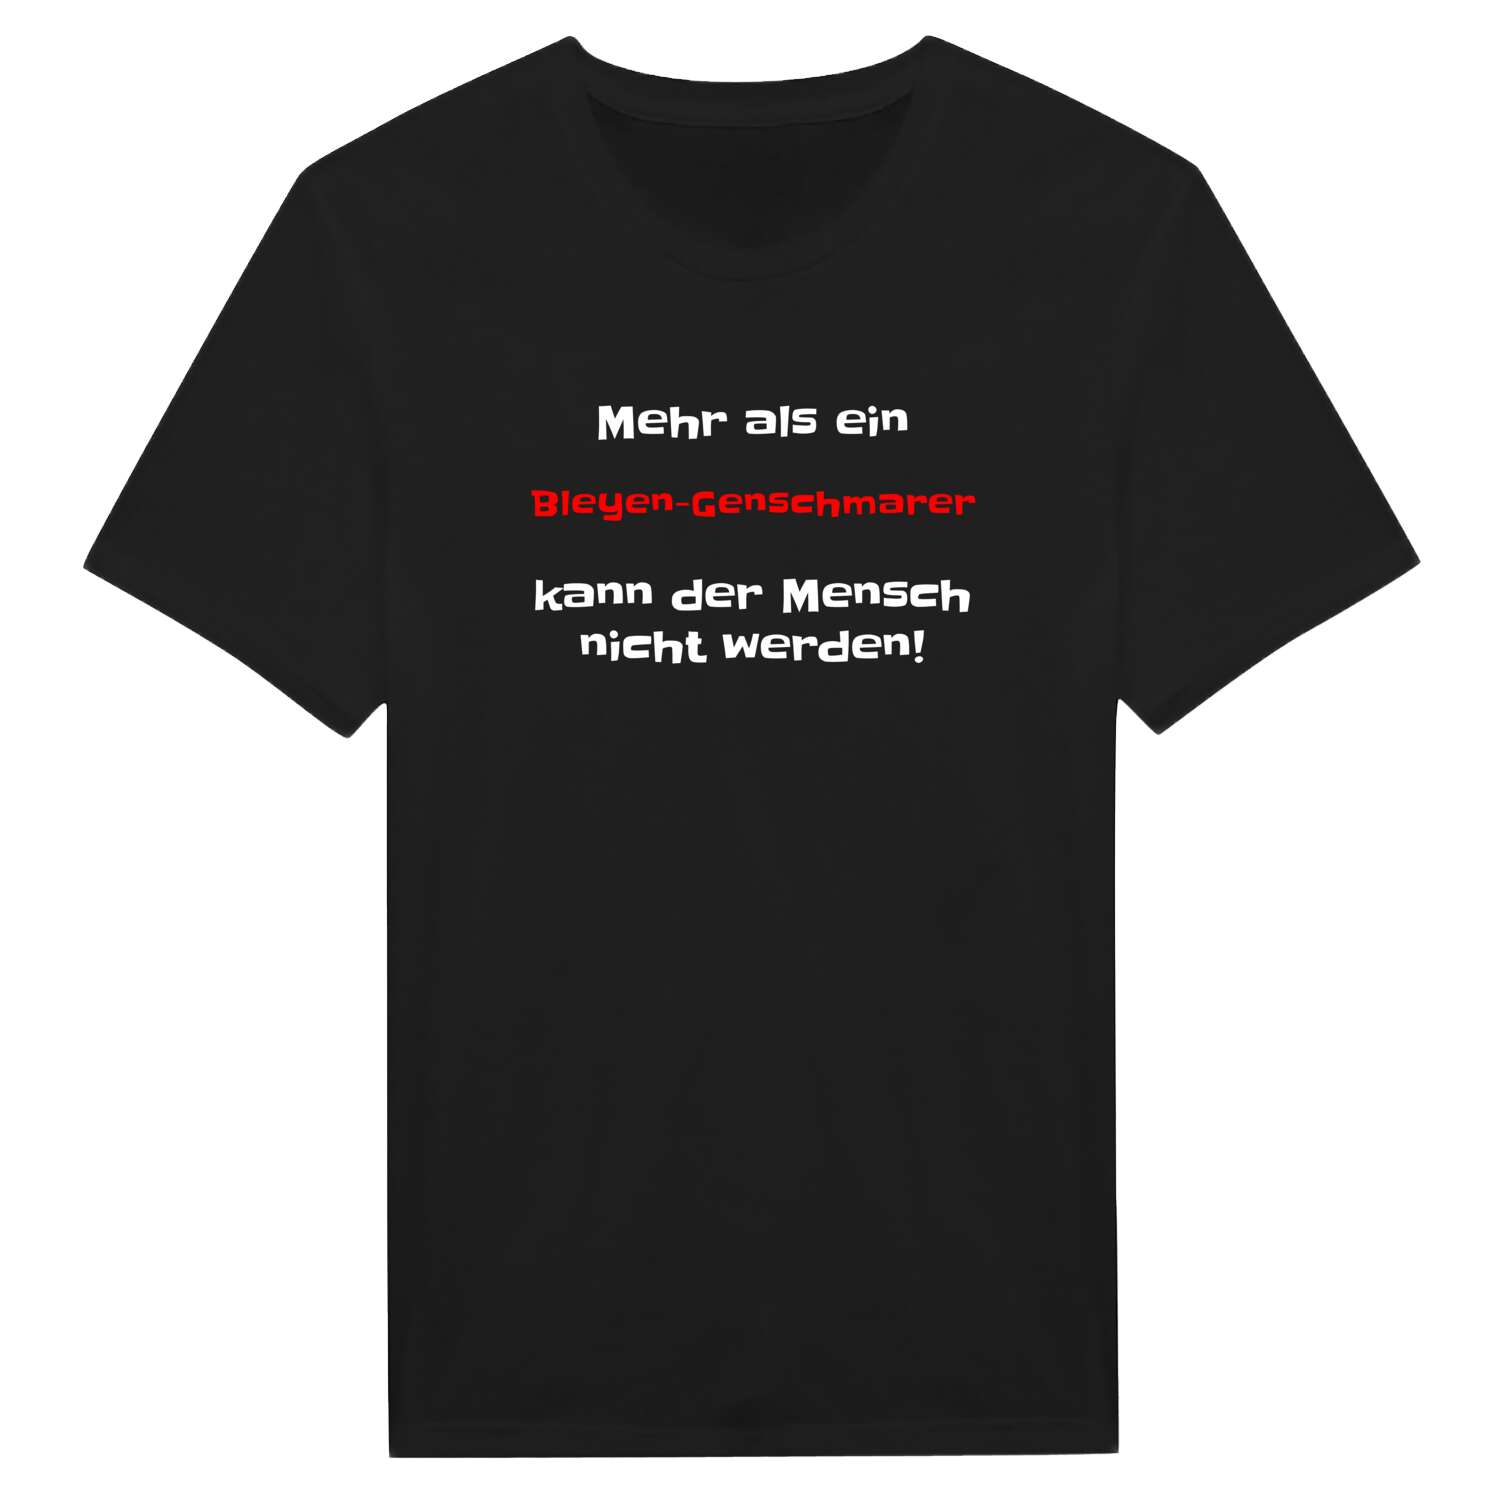 Bleyen-Genschmar T-Shirt »Mehr als ein«